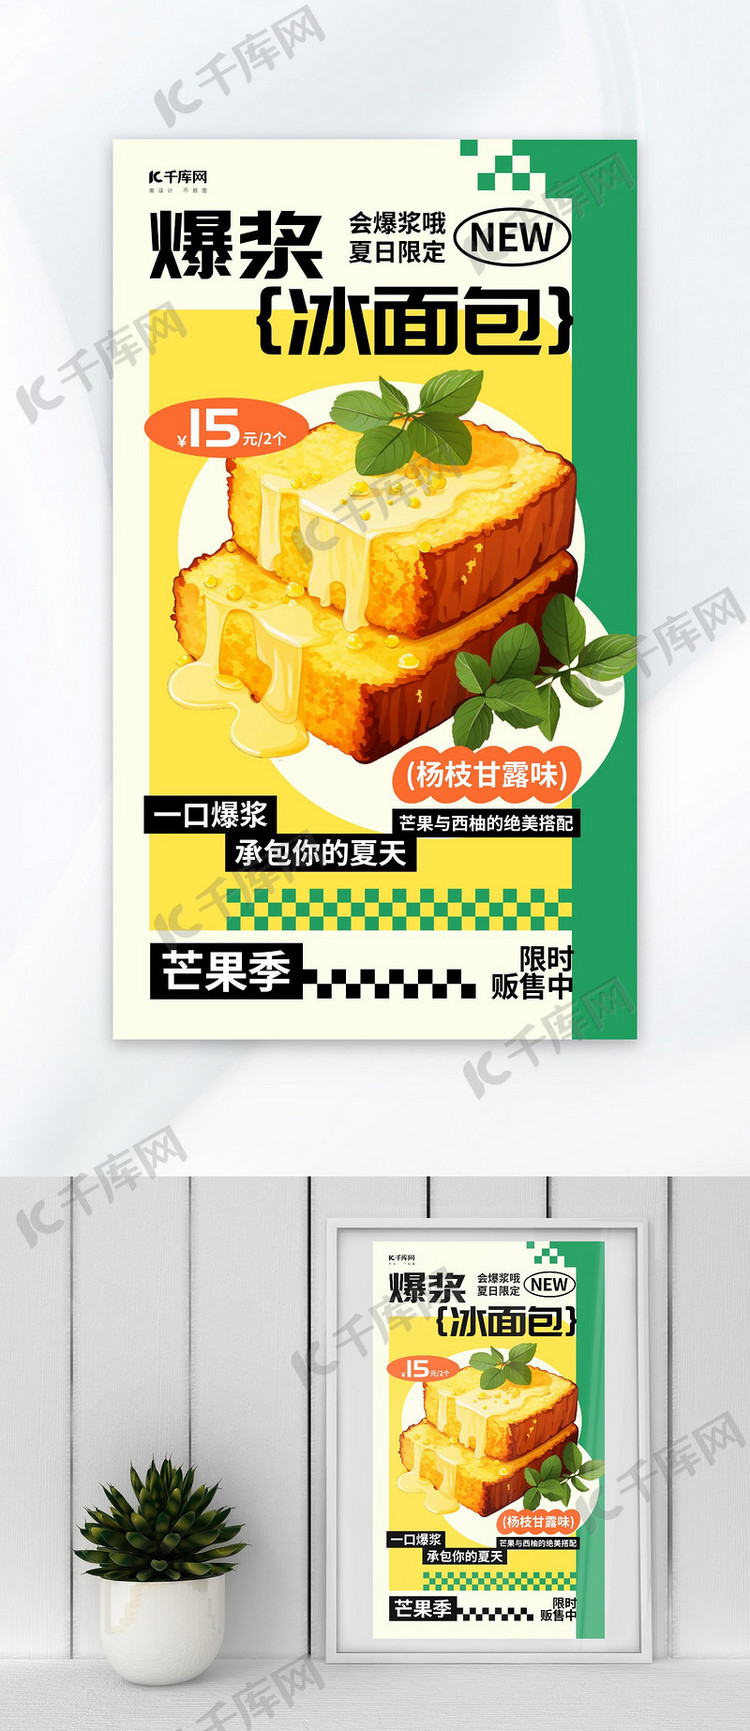 夏日限定甜品黄色AIGC广告宣传海报